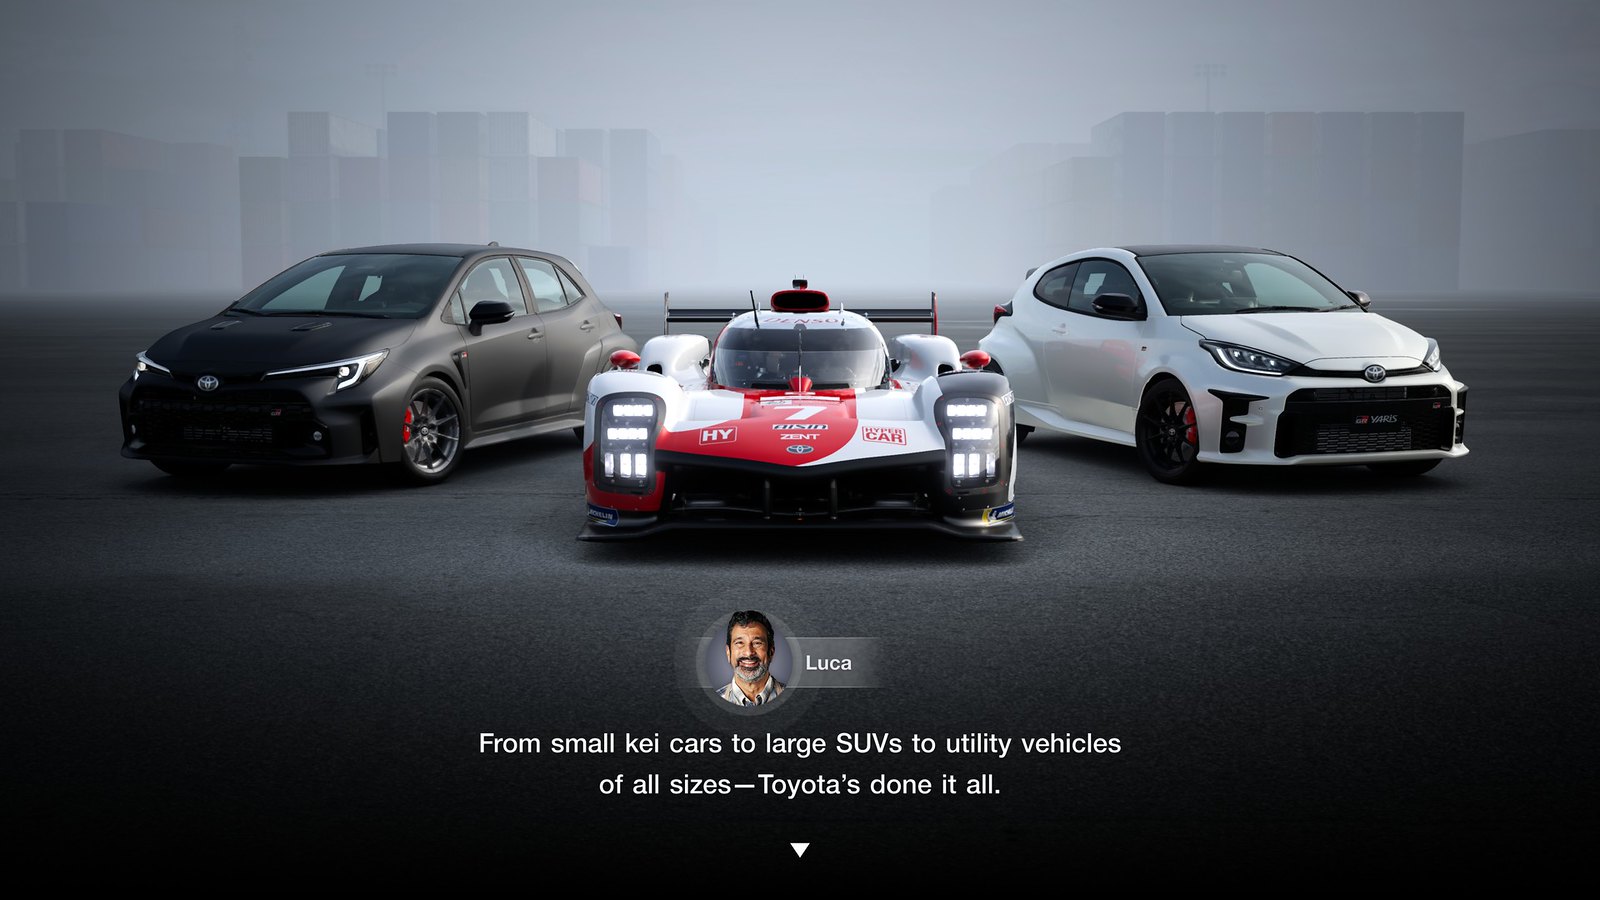 Gran Turismo 7 recebe atualização com três carros novos - Record